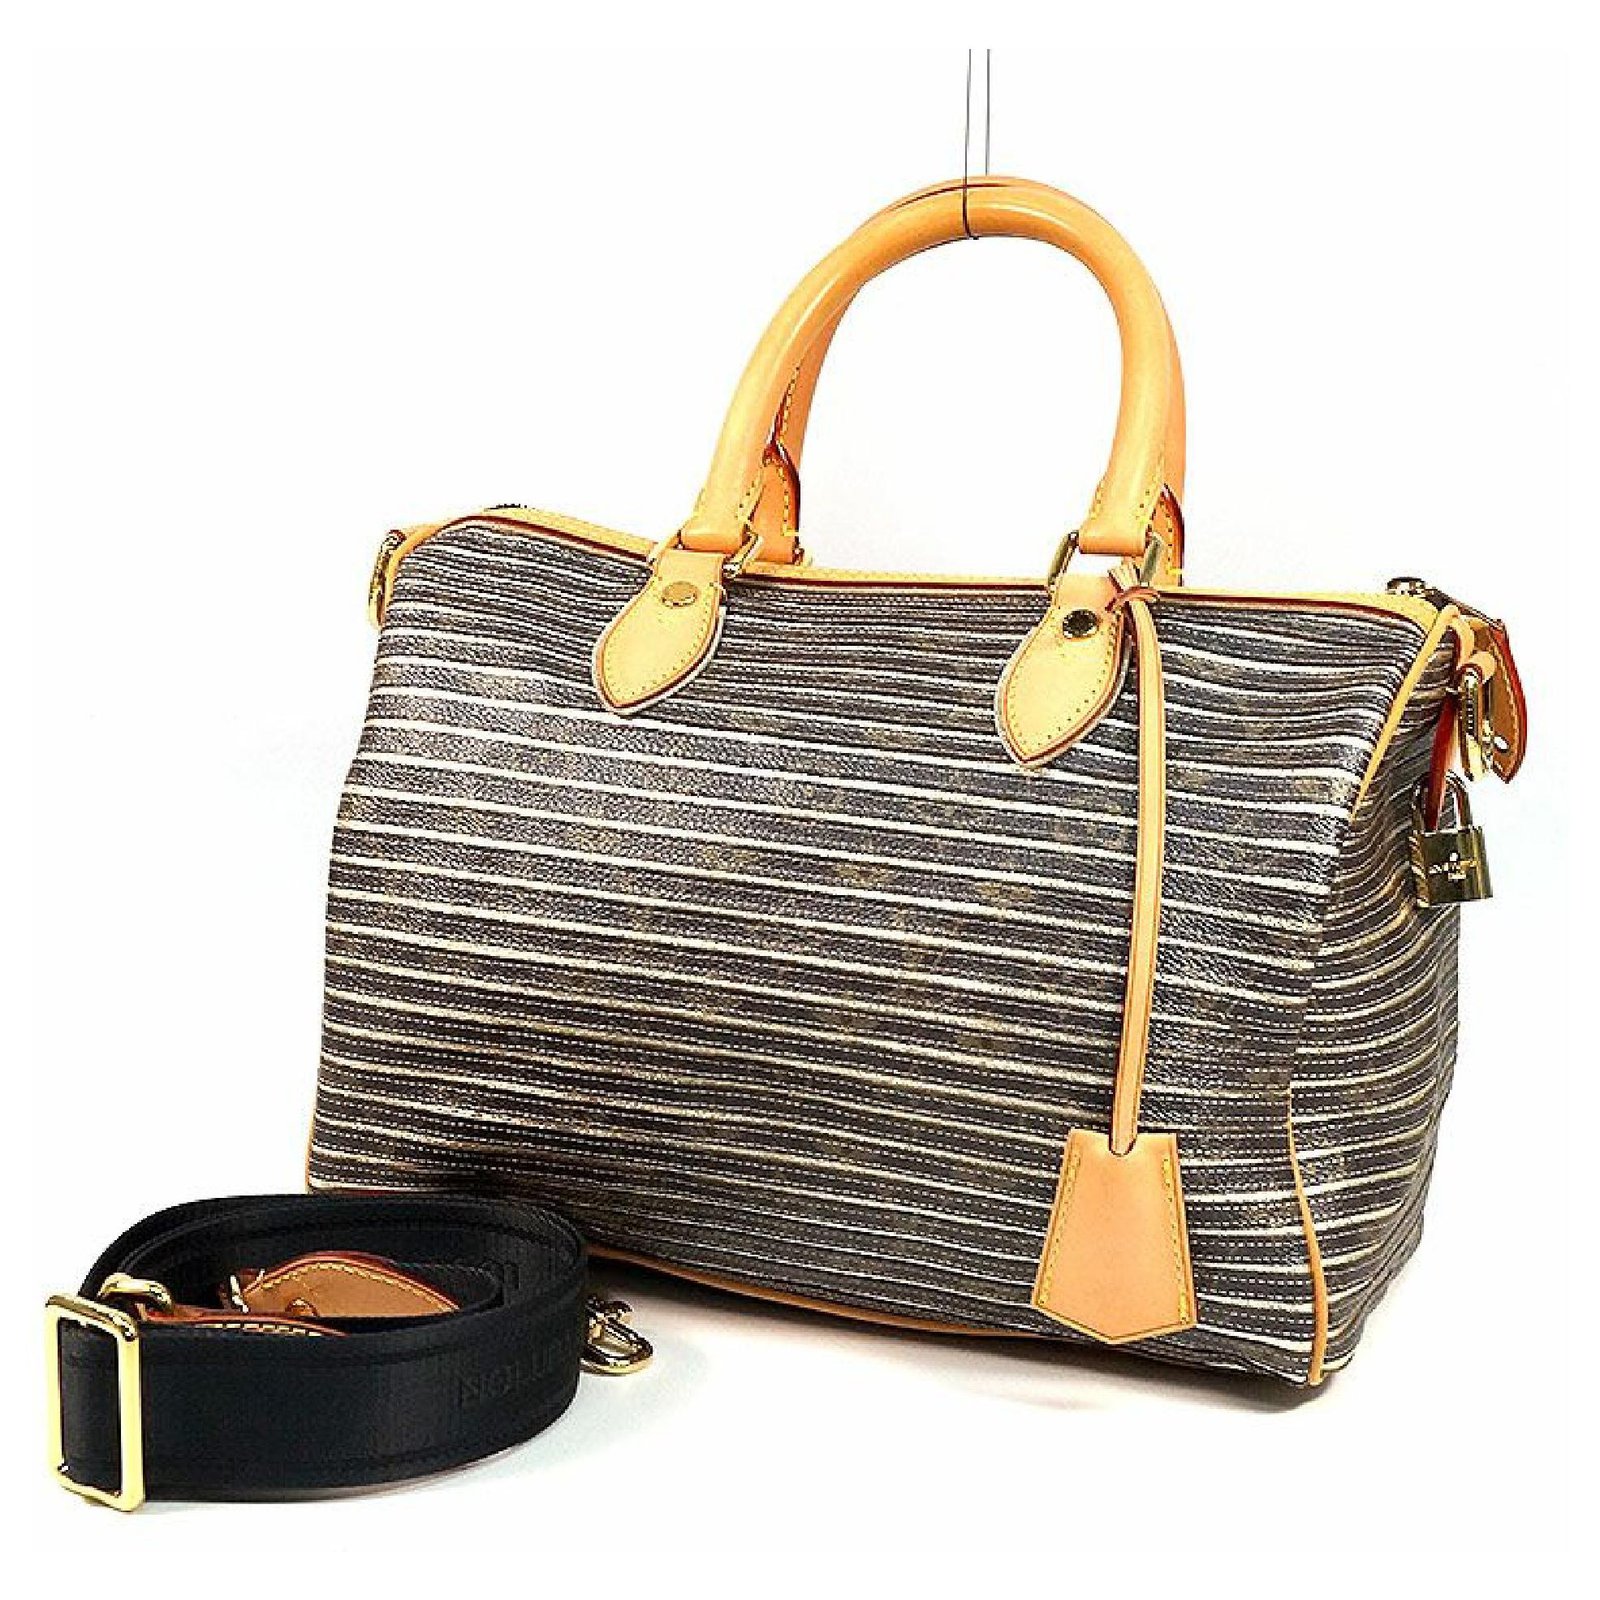 Speedy Bandoulière Louis Vuitton Handbags for Women - Vestiaire